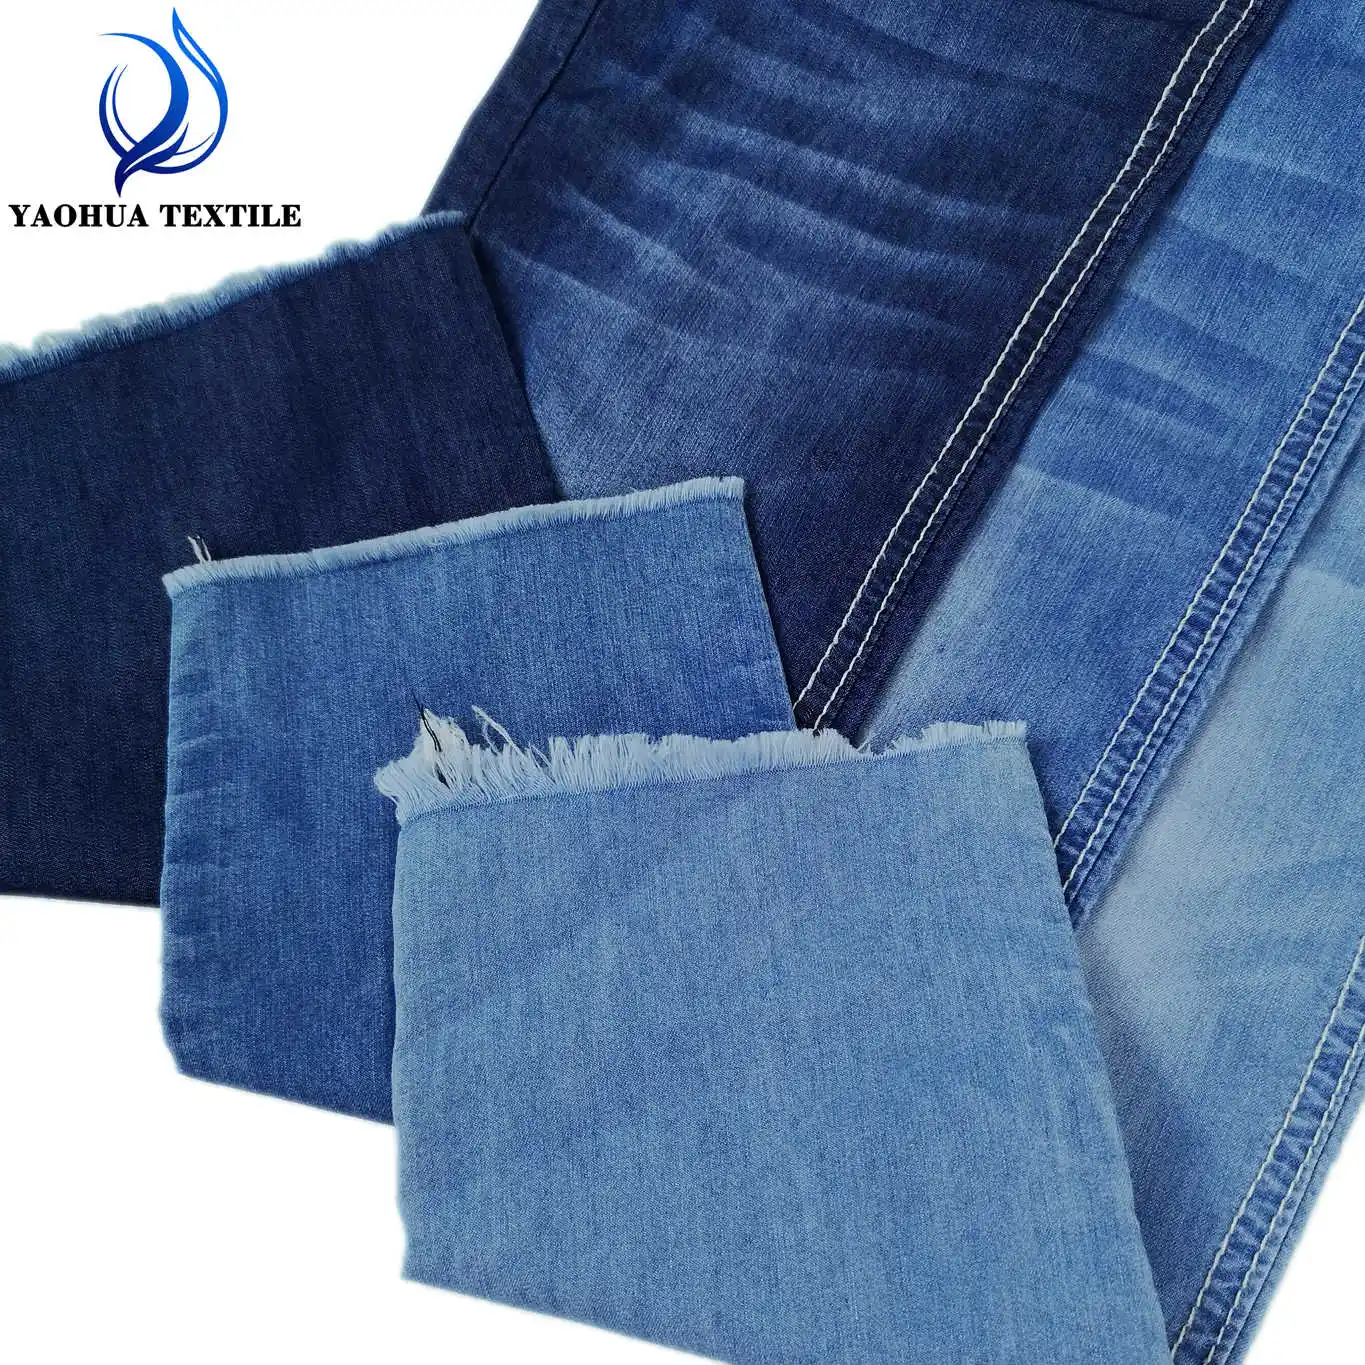 301 מוצרים חמים עם מחירים תחרותיים אור משקל כותנה פוליאסטר רך ג 'ינס בד עבור חולצה